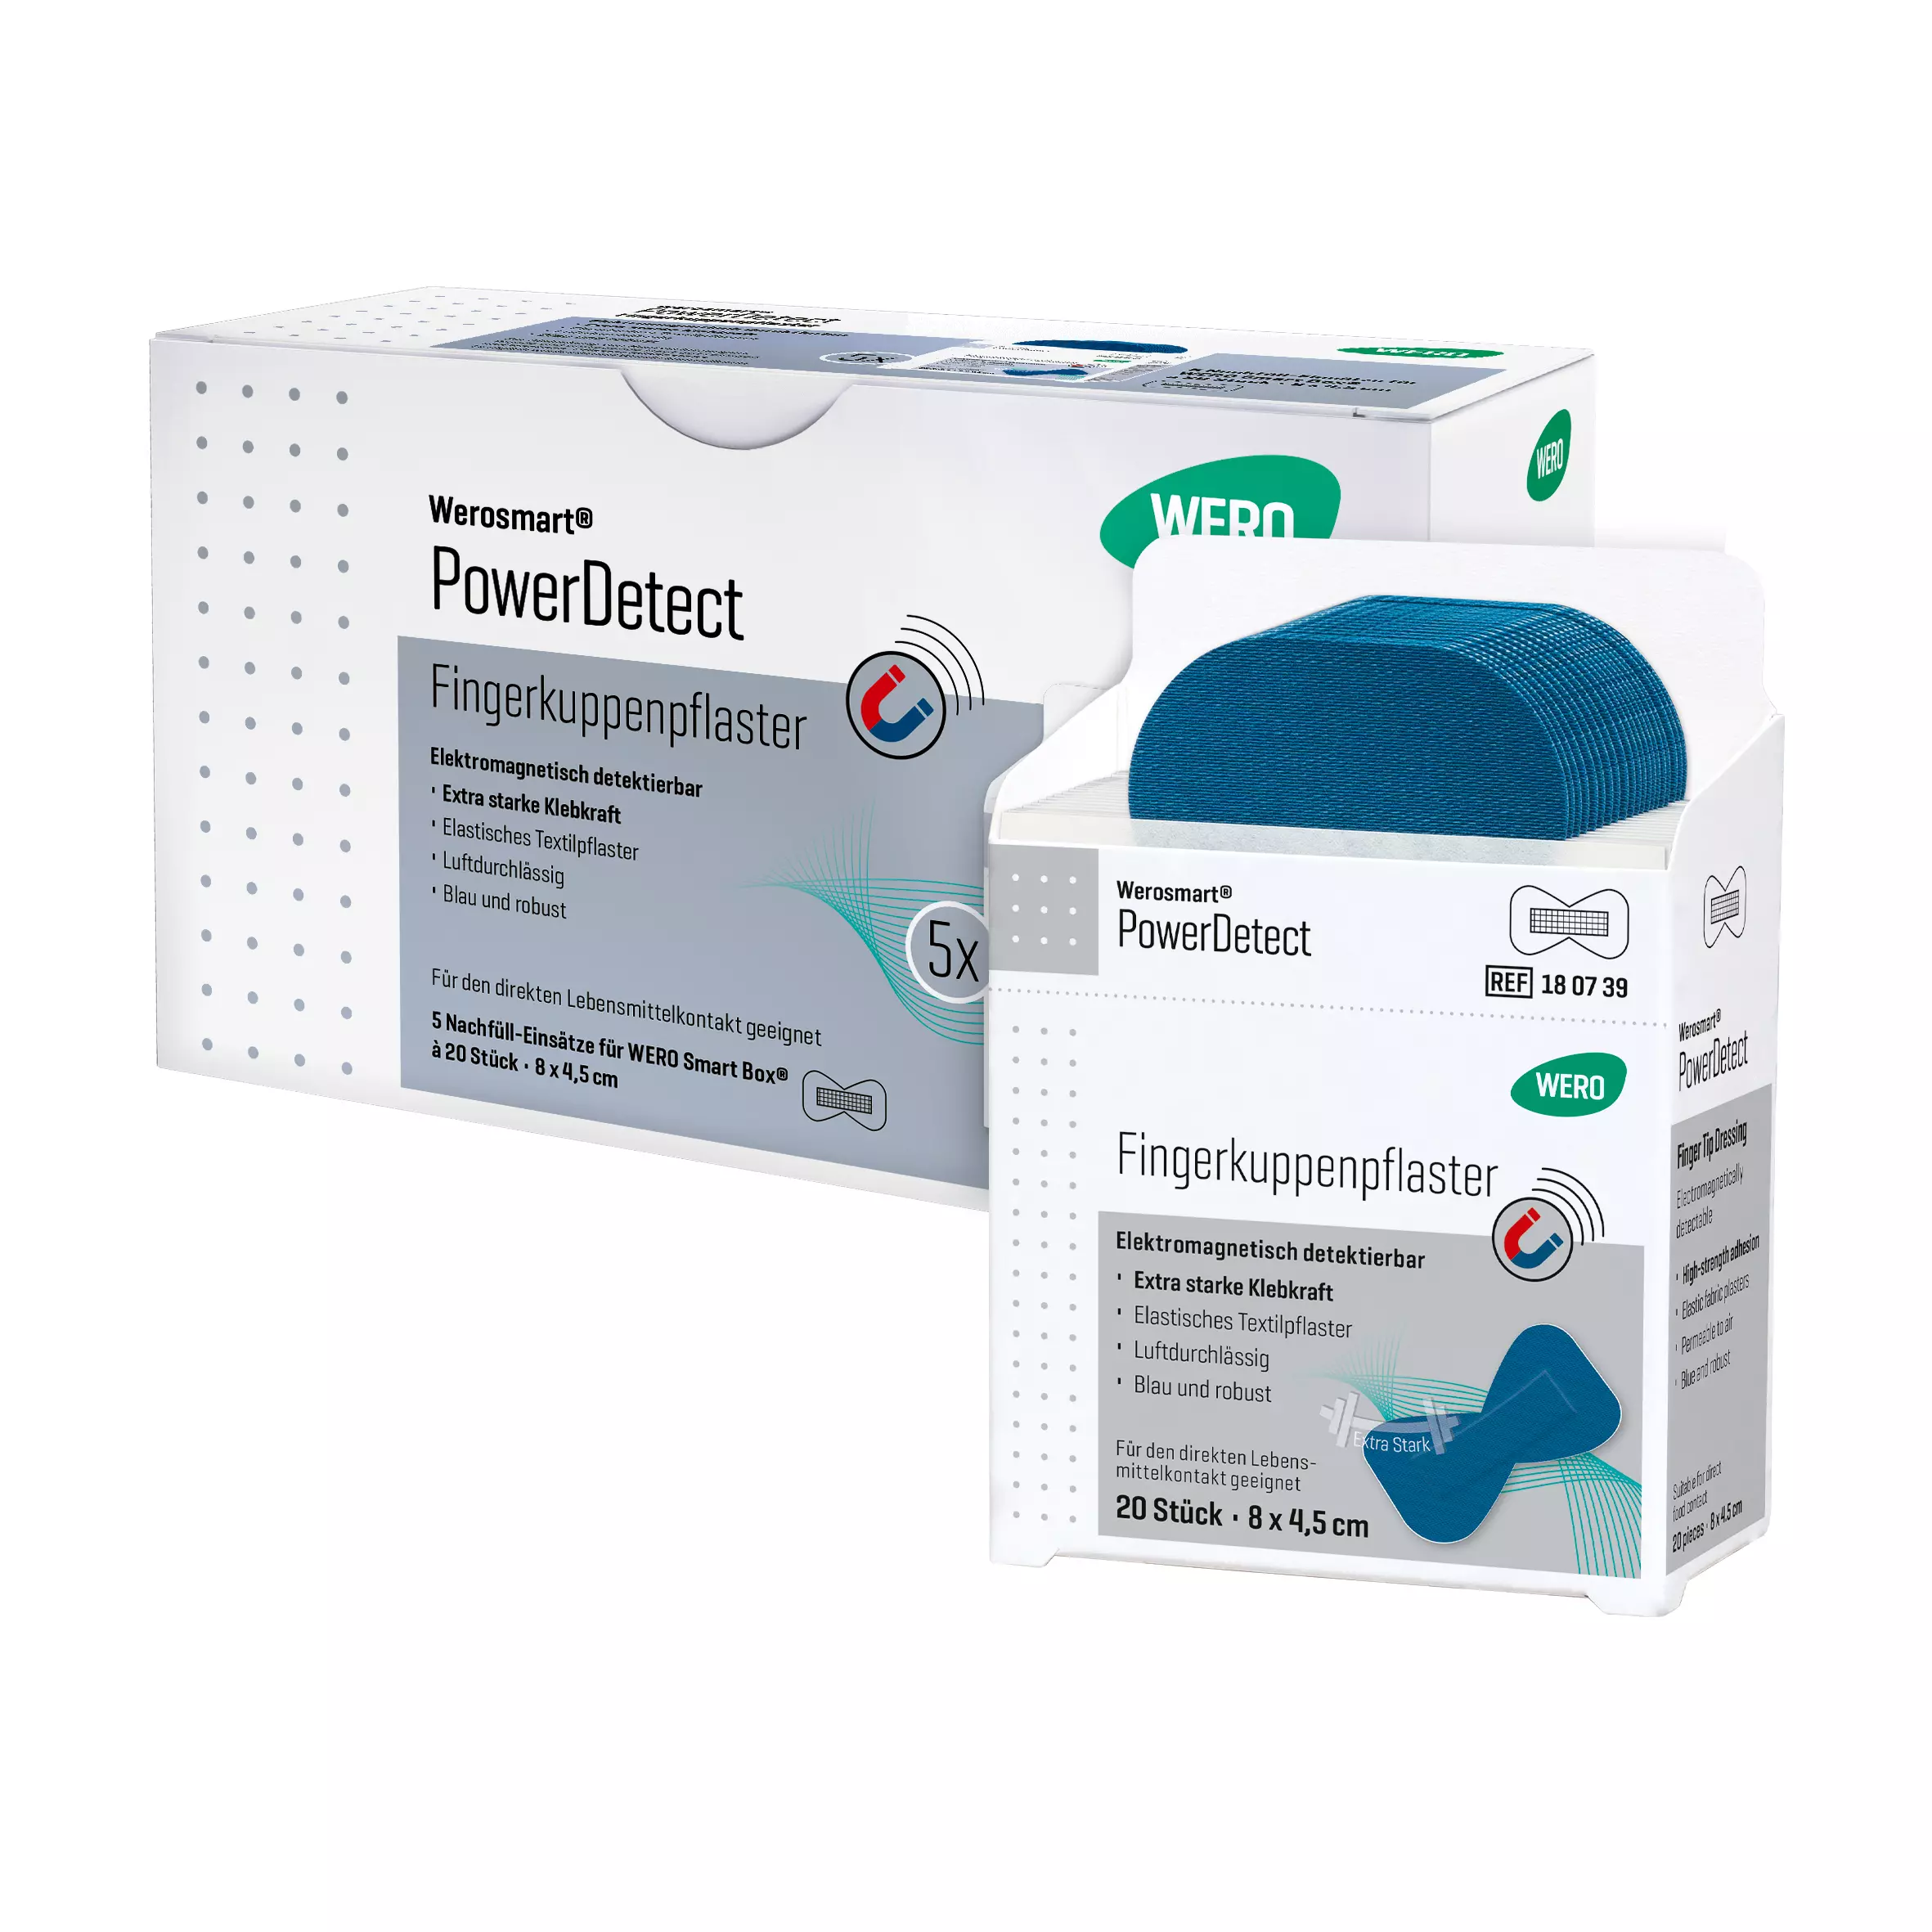 Werosmart® PowerDetect plaster dispenser inserts fingertip plasters - 8 cm, 5 inserts